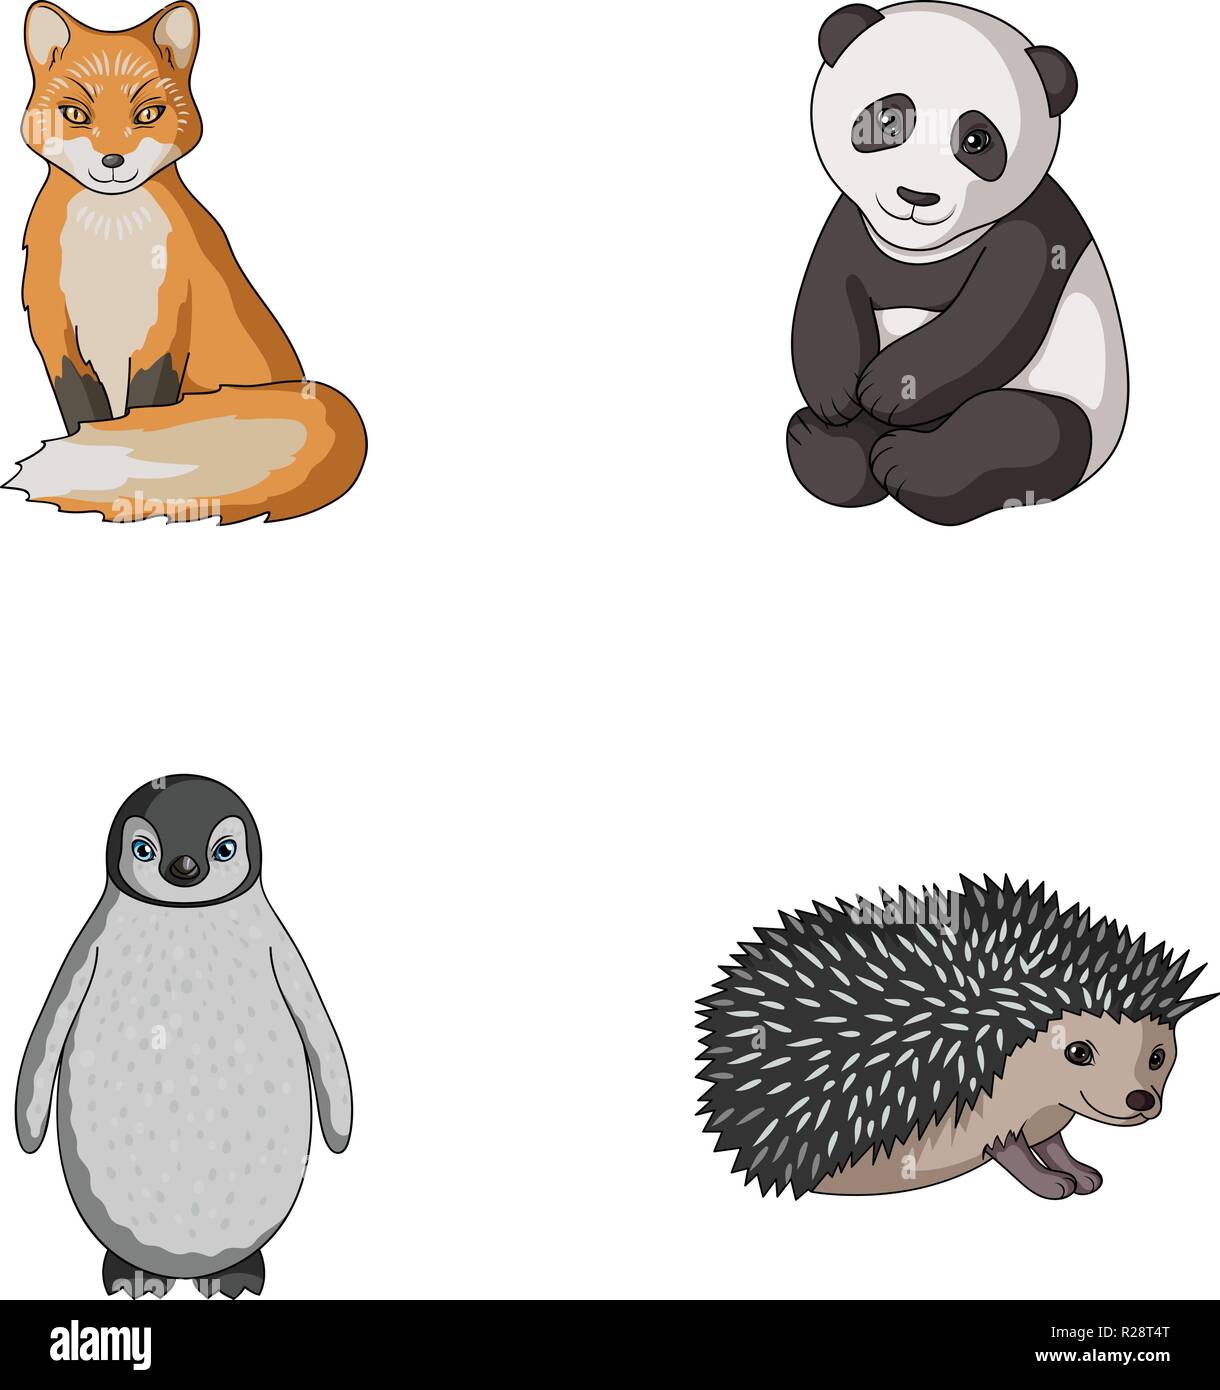 Fox Panda Riccio Pinguino E Altri Animali Gli Animali Raccolta Di Set Di Icone In Stile Cartoon Simbolo Vettore Illustrazione Stock Immagine E Vettoriale Alamy